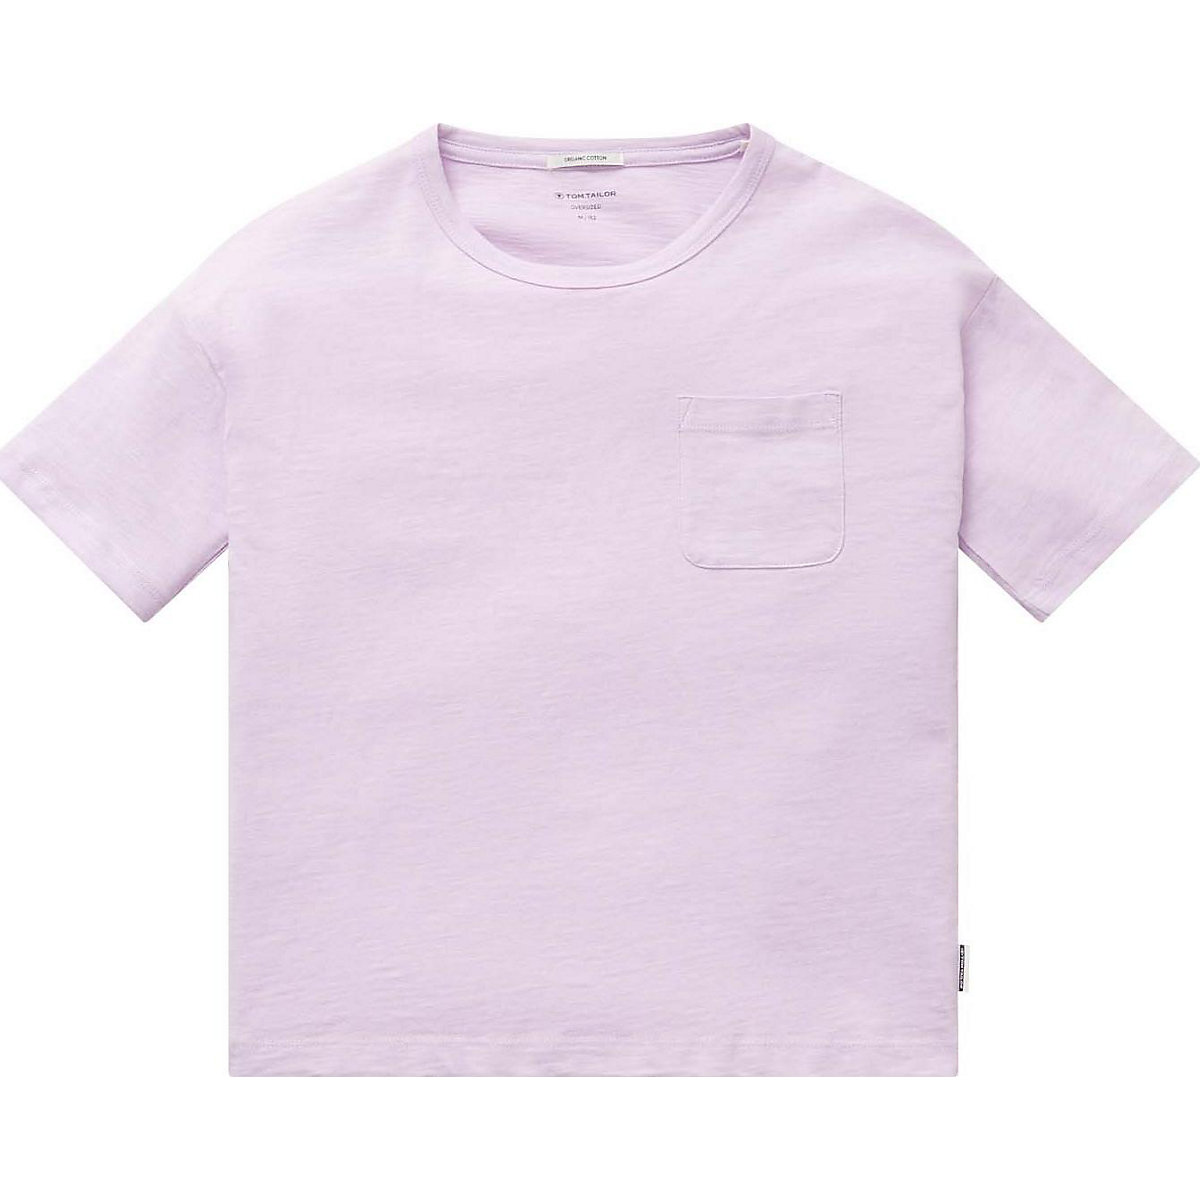 TOM TAILOR T-Shirt für Mädchen lila